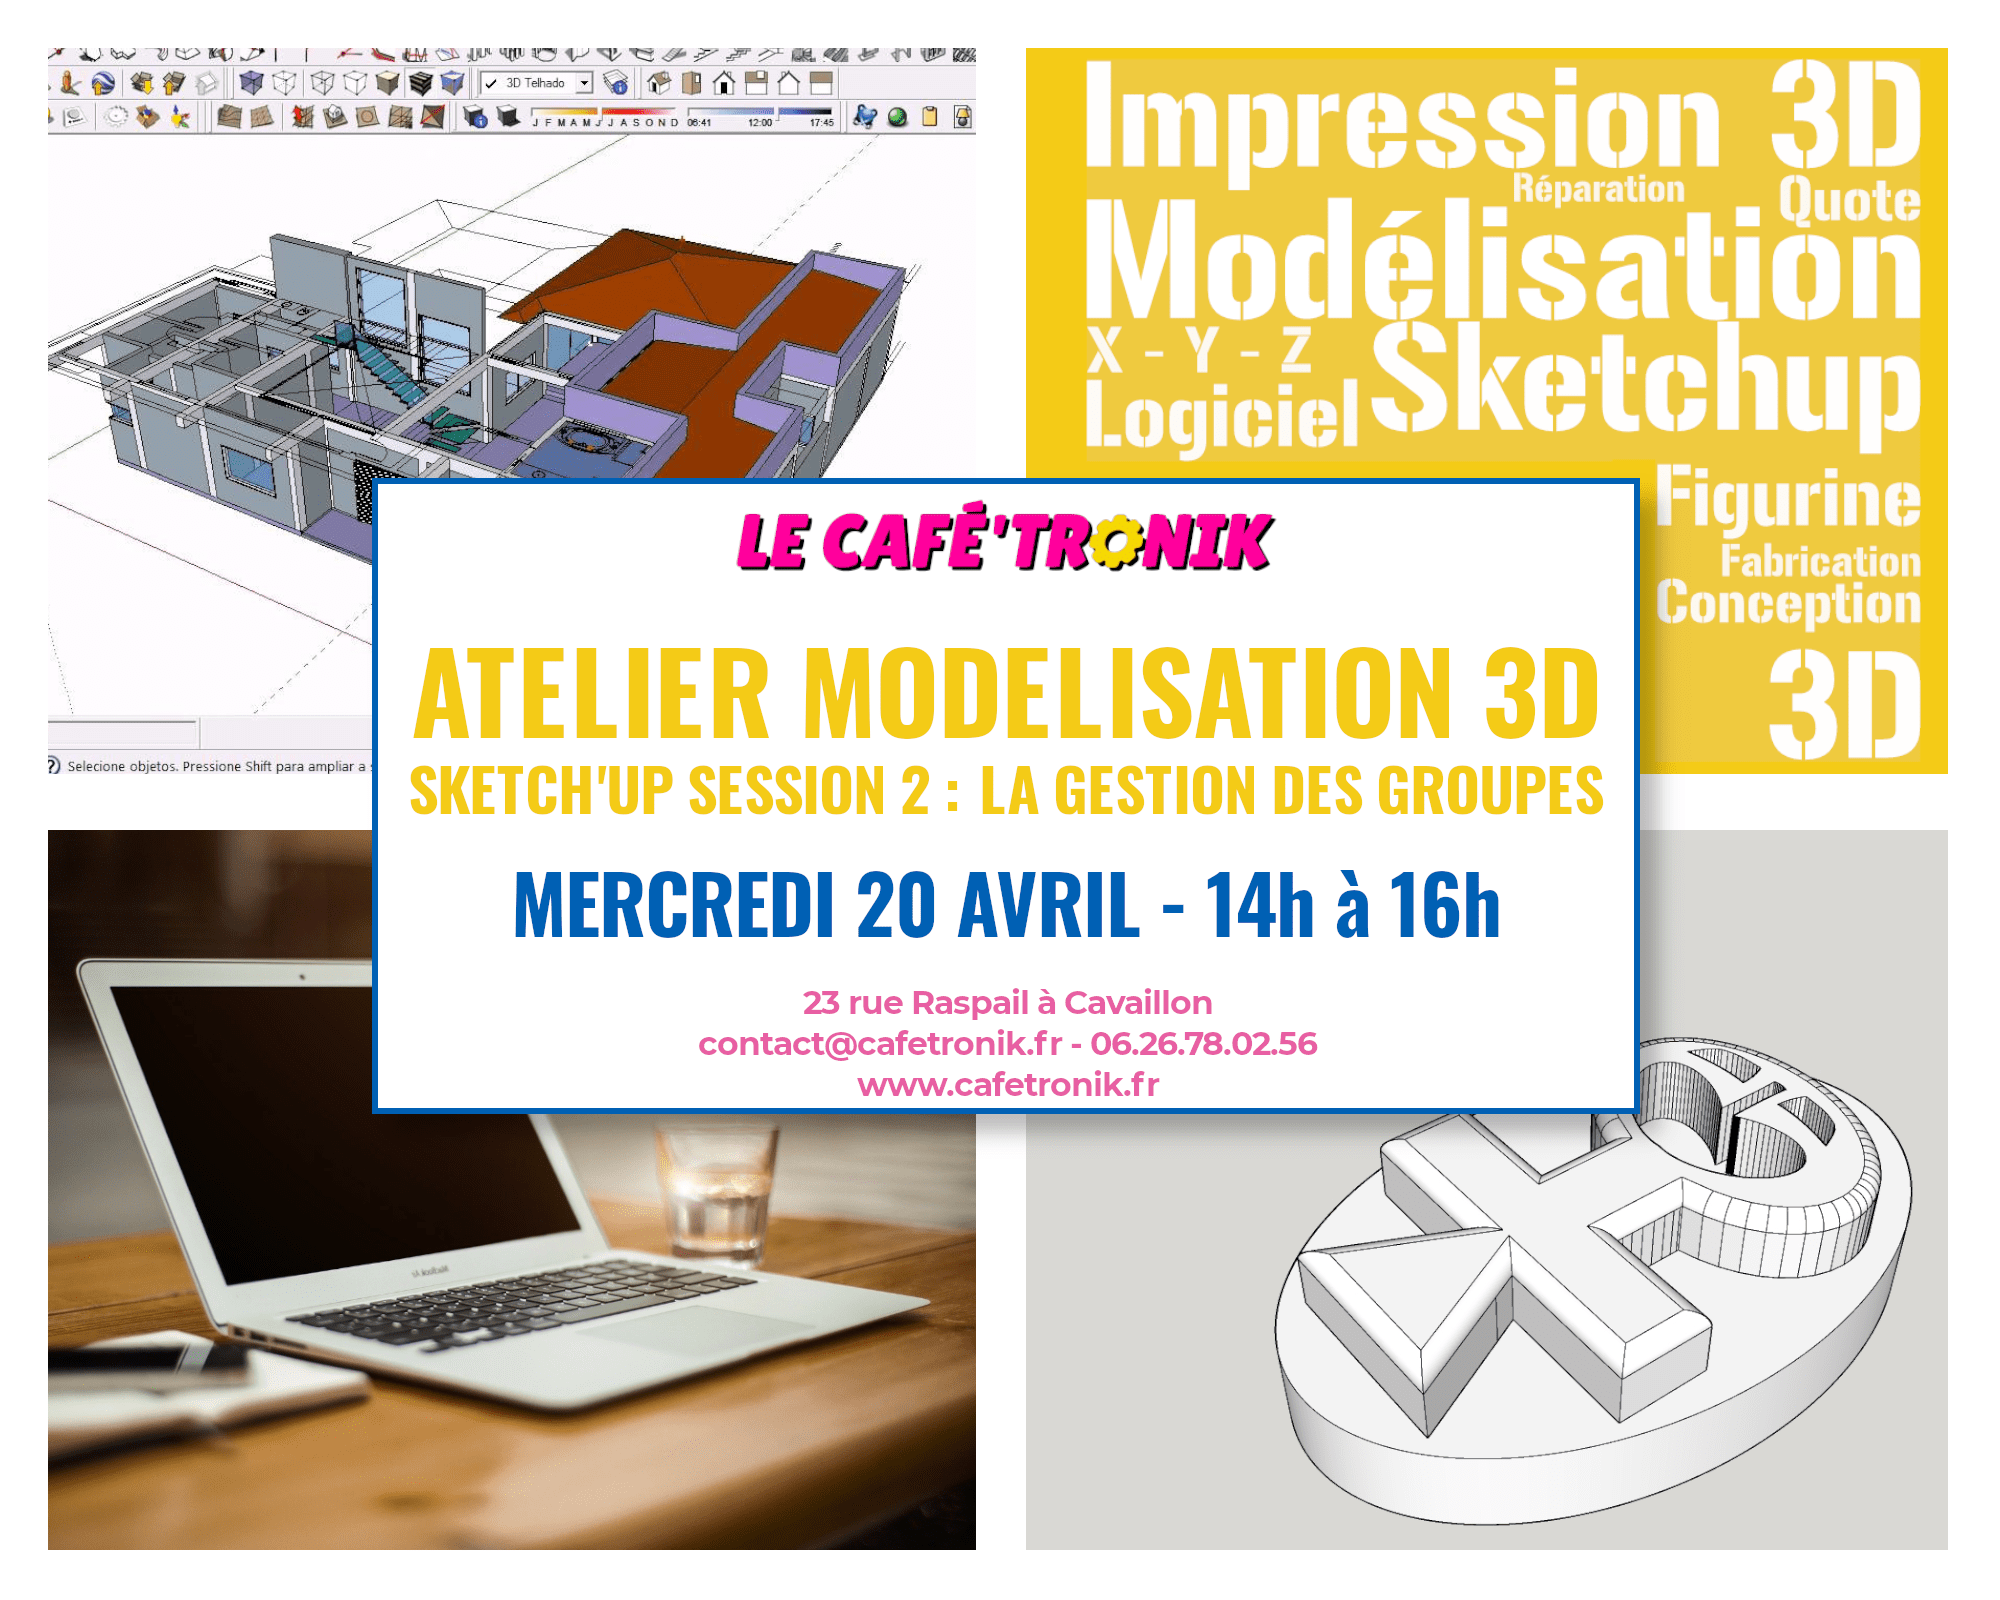 Lire la suite à propos de l’article Atelier Modélisation 3D avec Sketch’Up – Session 2